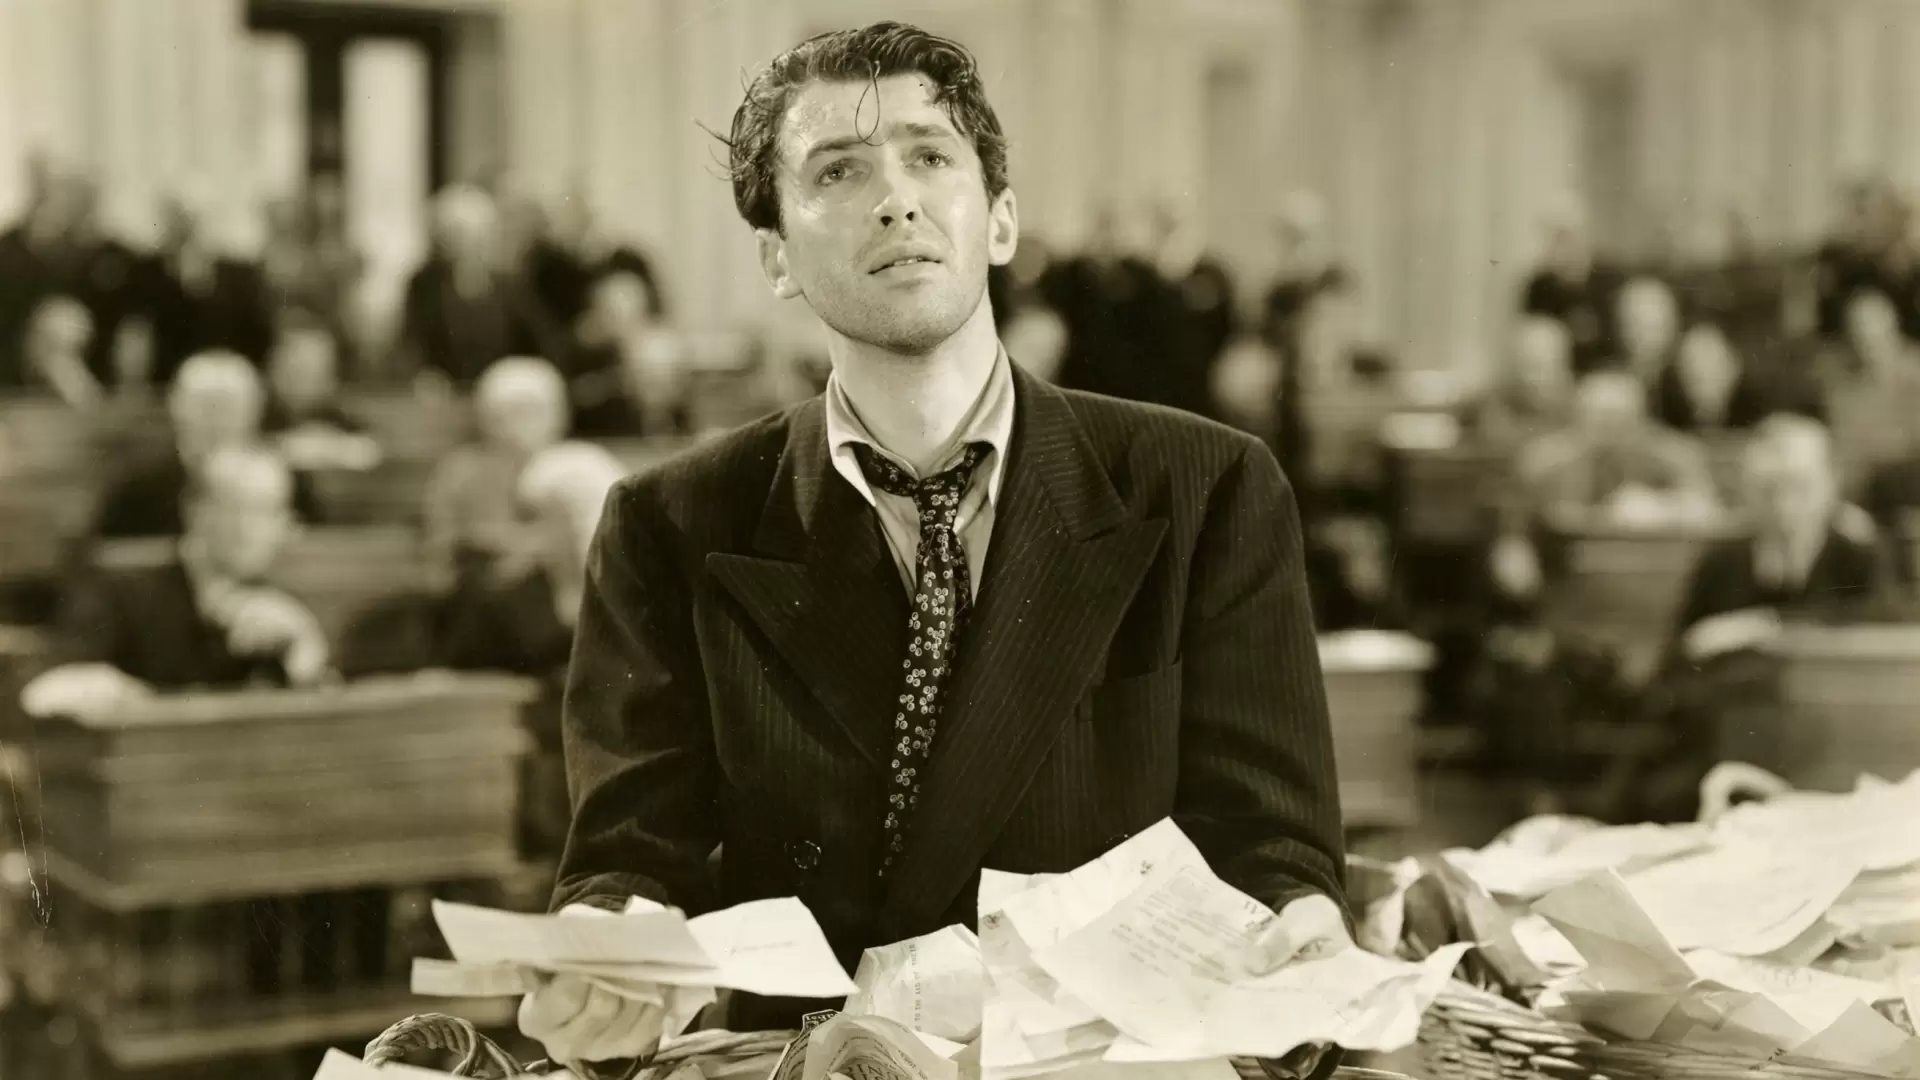 دانلود فیلم Mr. Smith Goes to Washington 1939 (آقای اسمیت به واشنگتن می رود) با زیرنویس فارسی و تماشای آنلاین